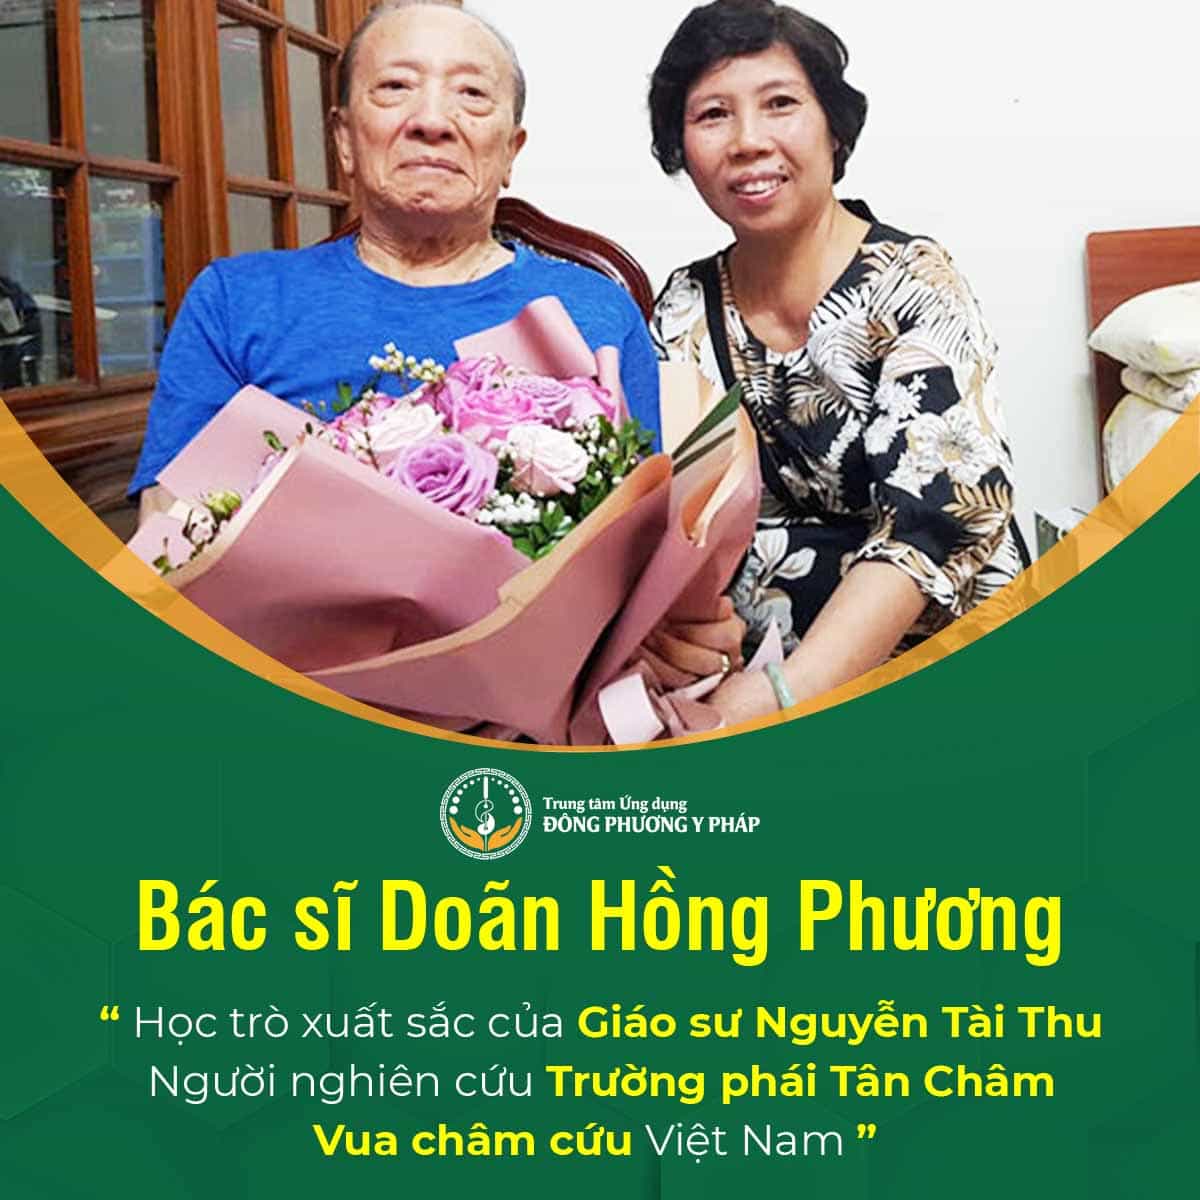 Bác sĩ Doãn Hồng Phương, học trò xuất sắc của GS Nguyễn Tài Thu, bậc thầy châm cứu Việt Nam